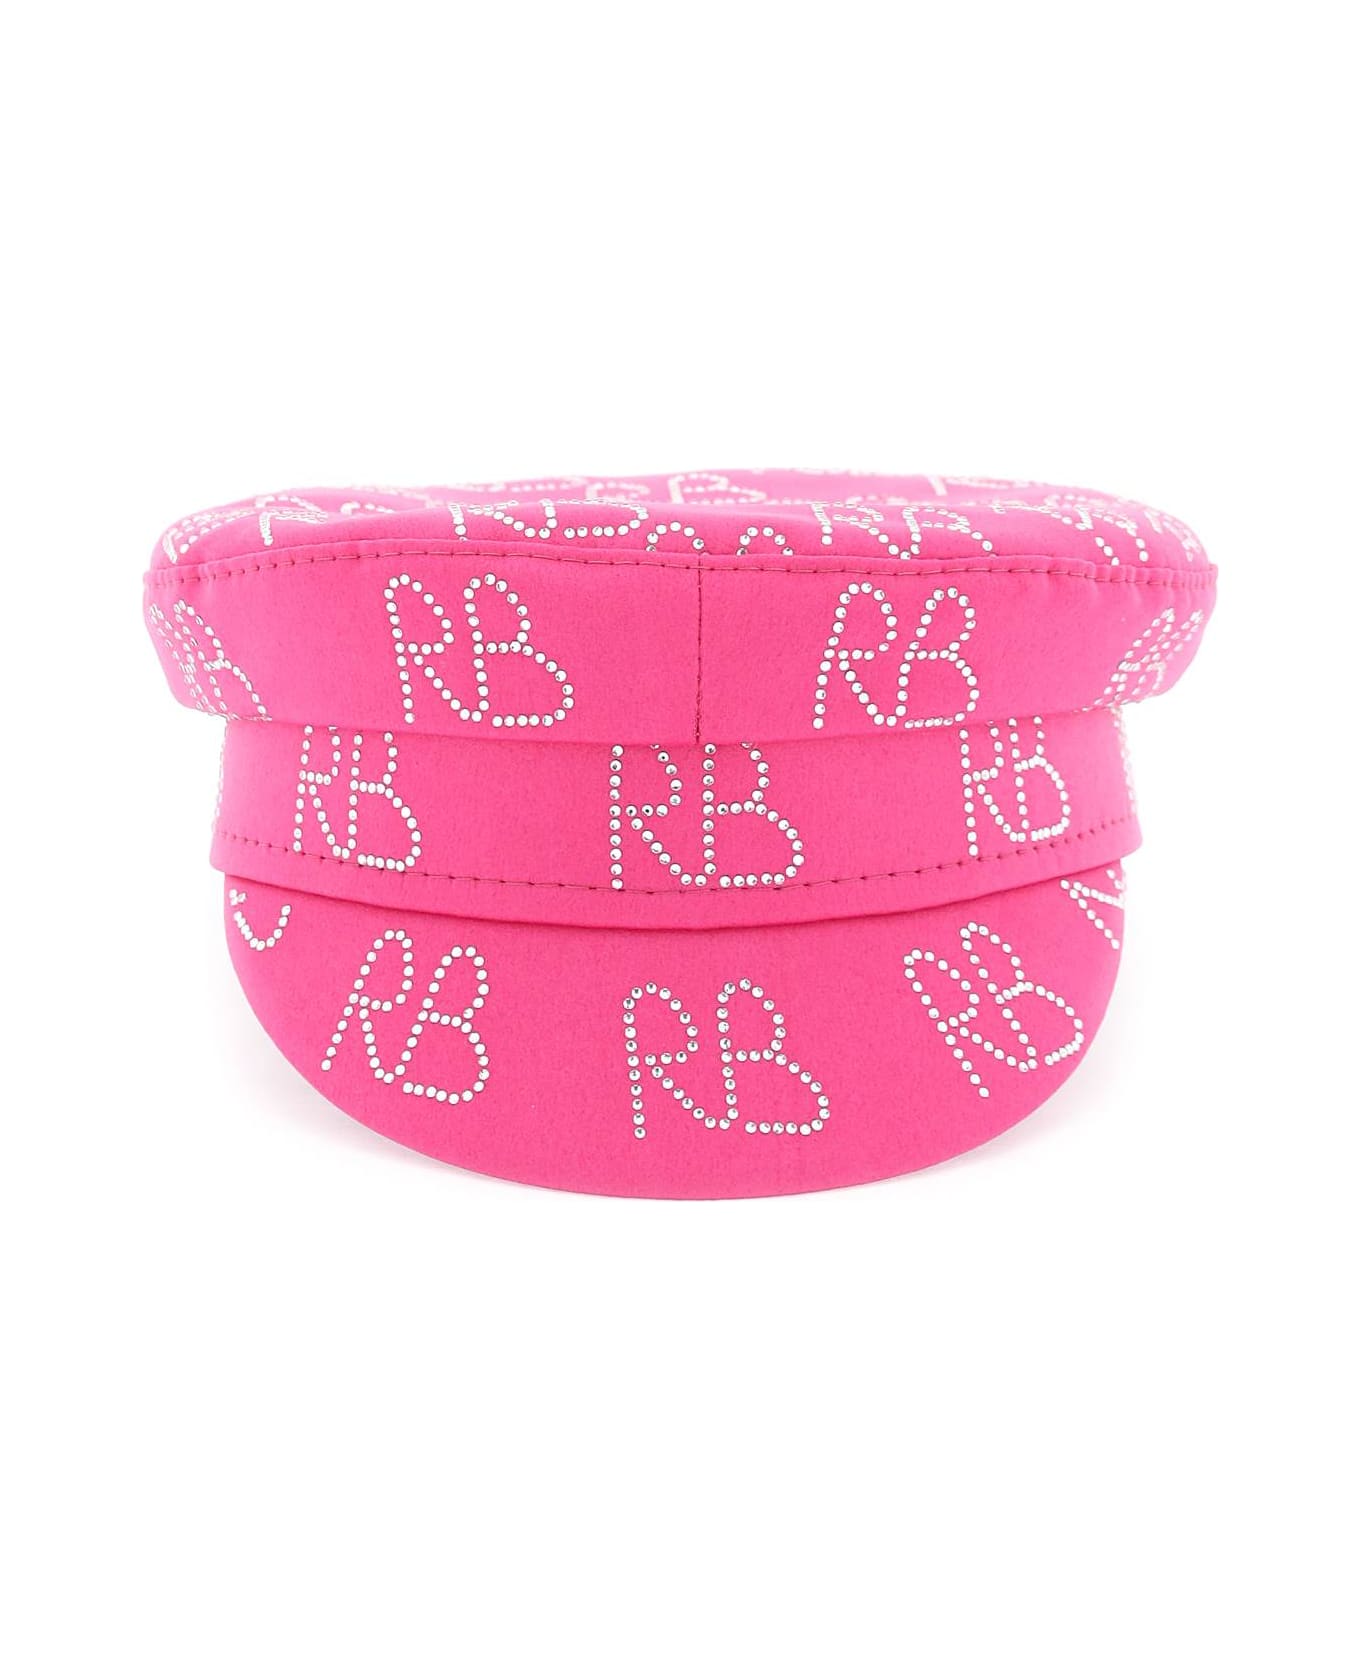 Ruslan Baginskiy Rhinestones Baker Boy Cap - PINK (Pink)